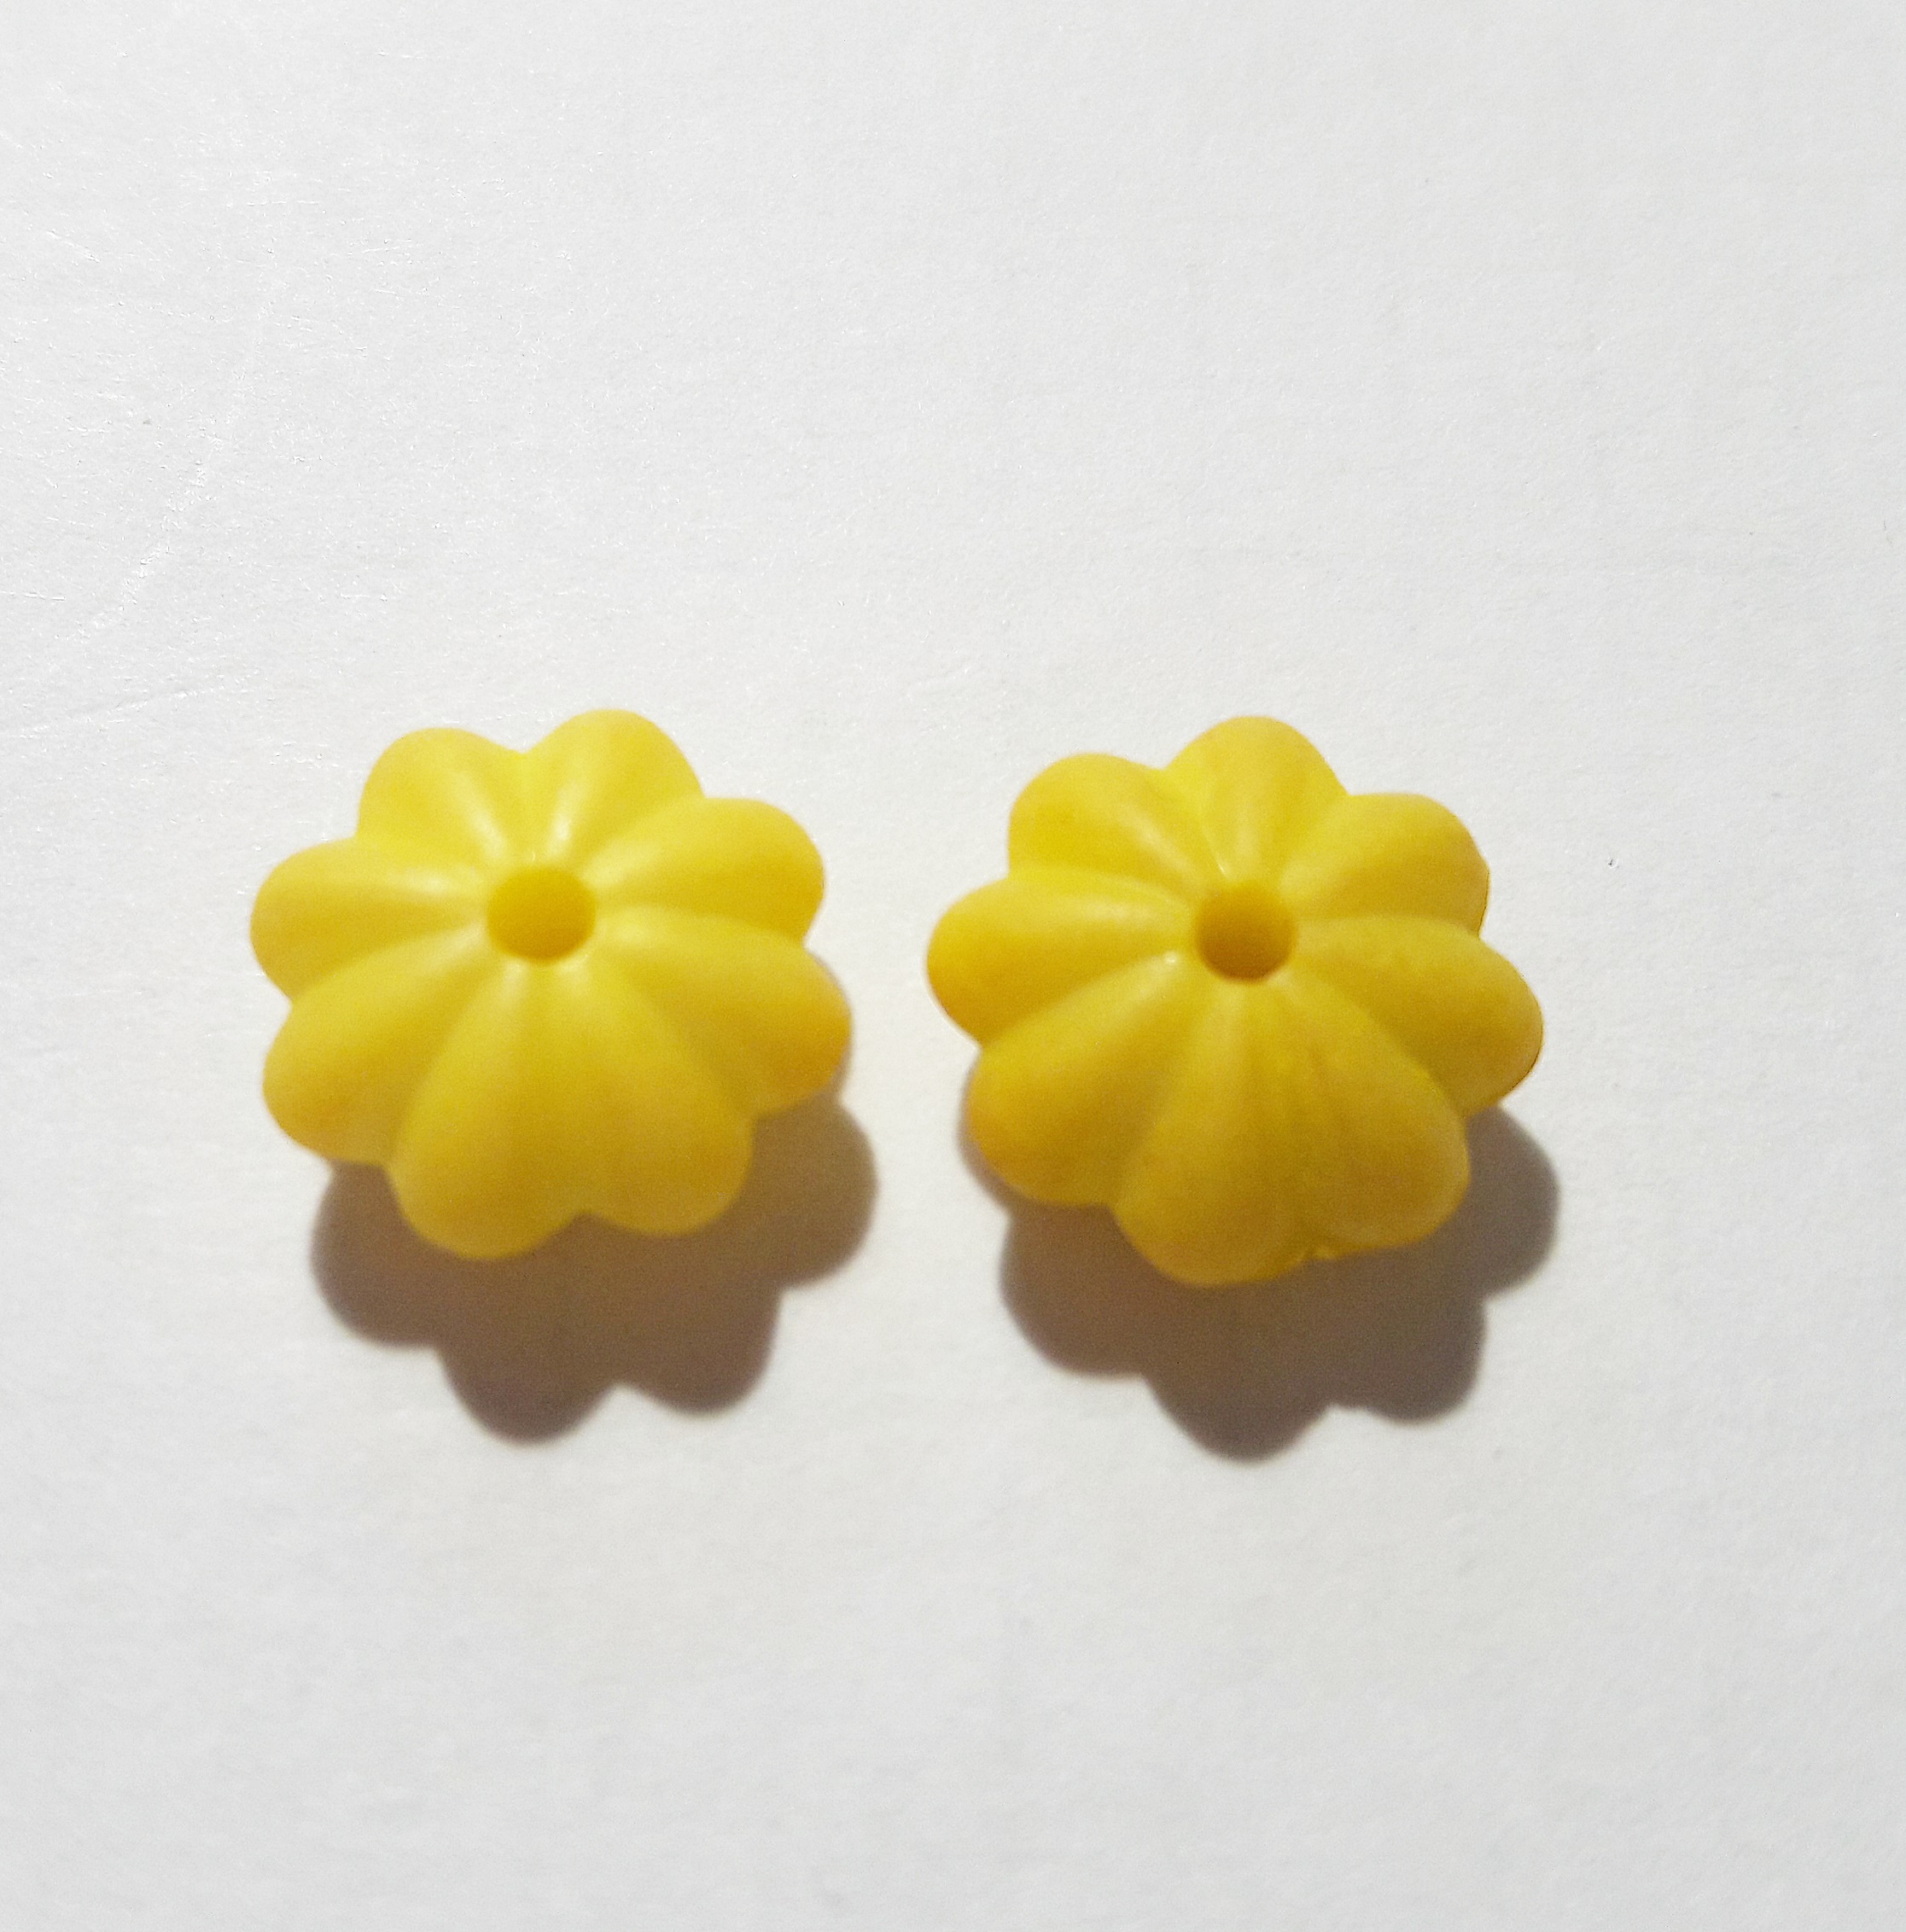 Sárga virág gyöngy, köztes, 12x6 mm